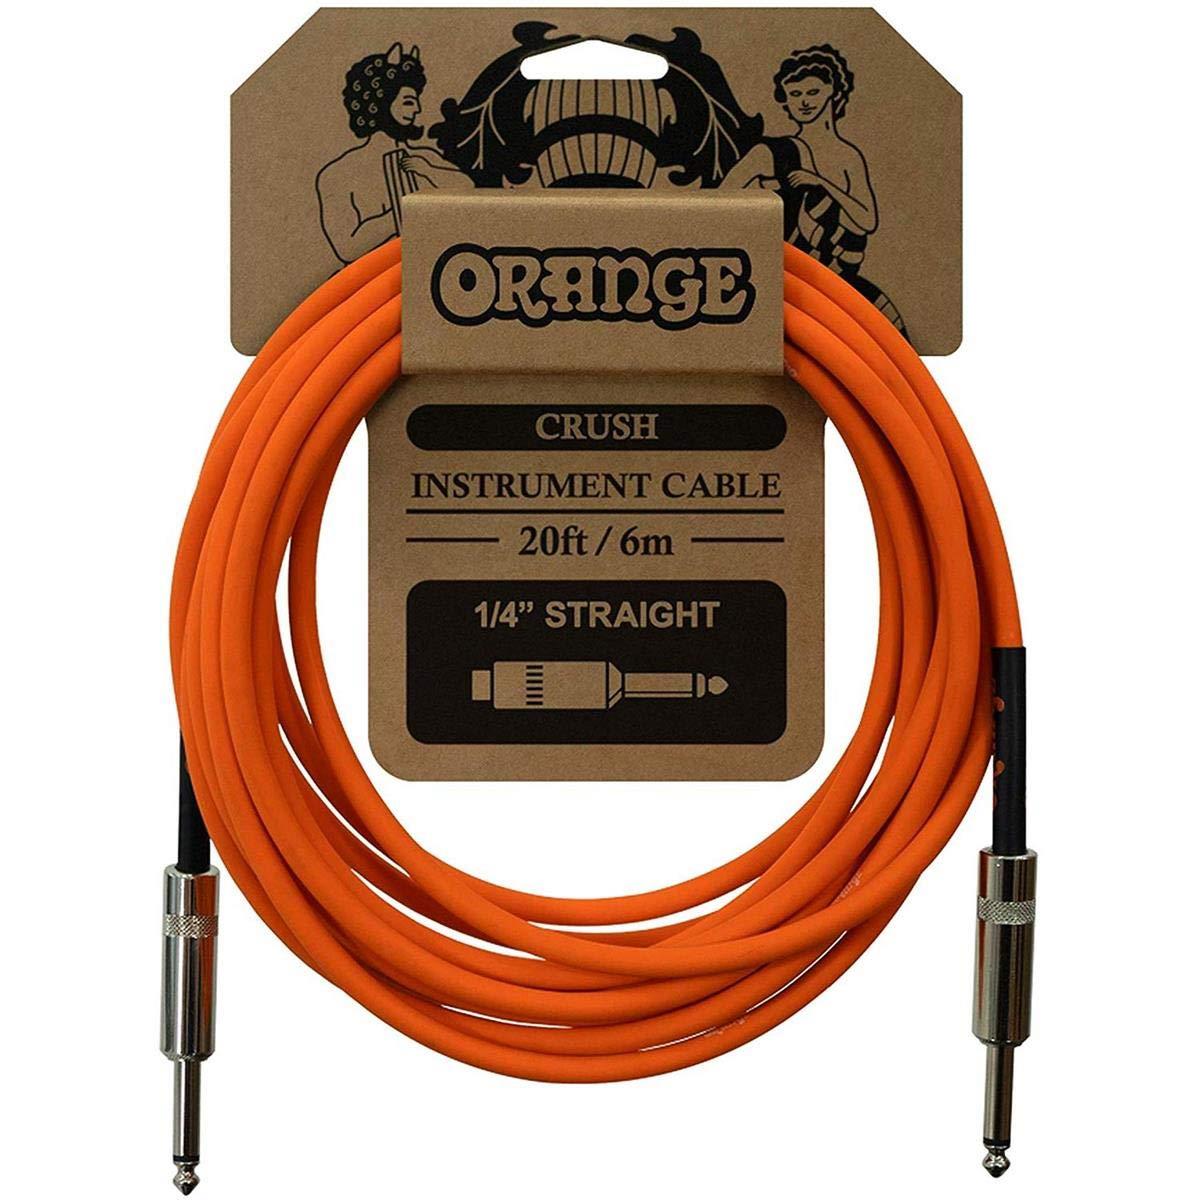 Orange CRUSH Instrument Cable 20ft/6m 1/4